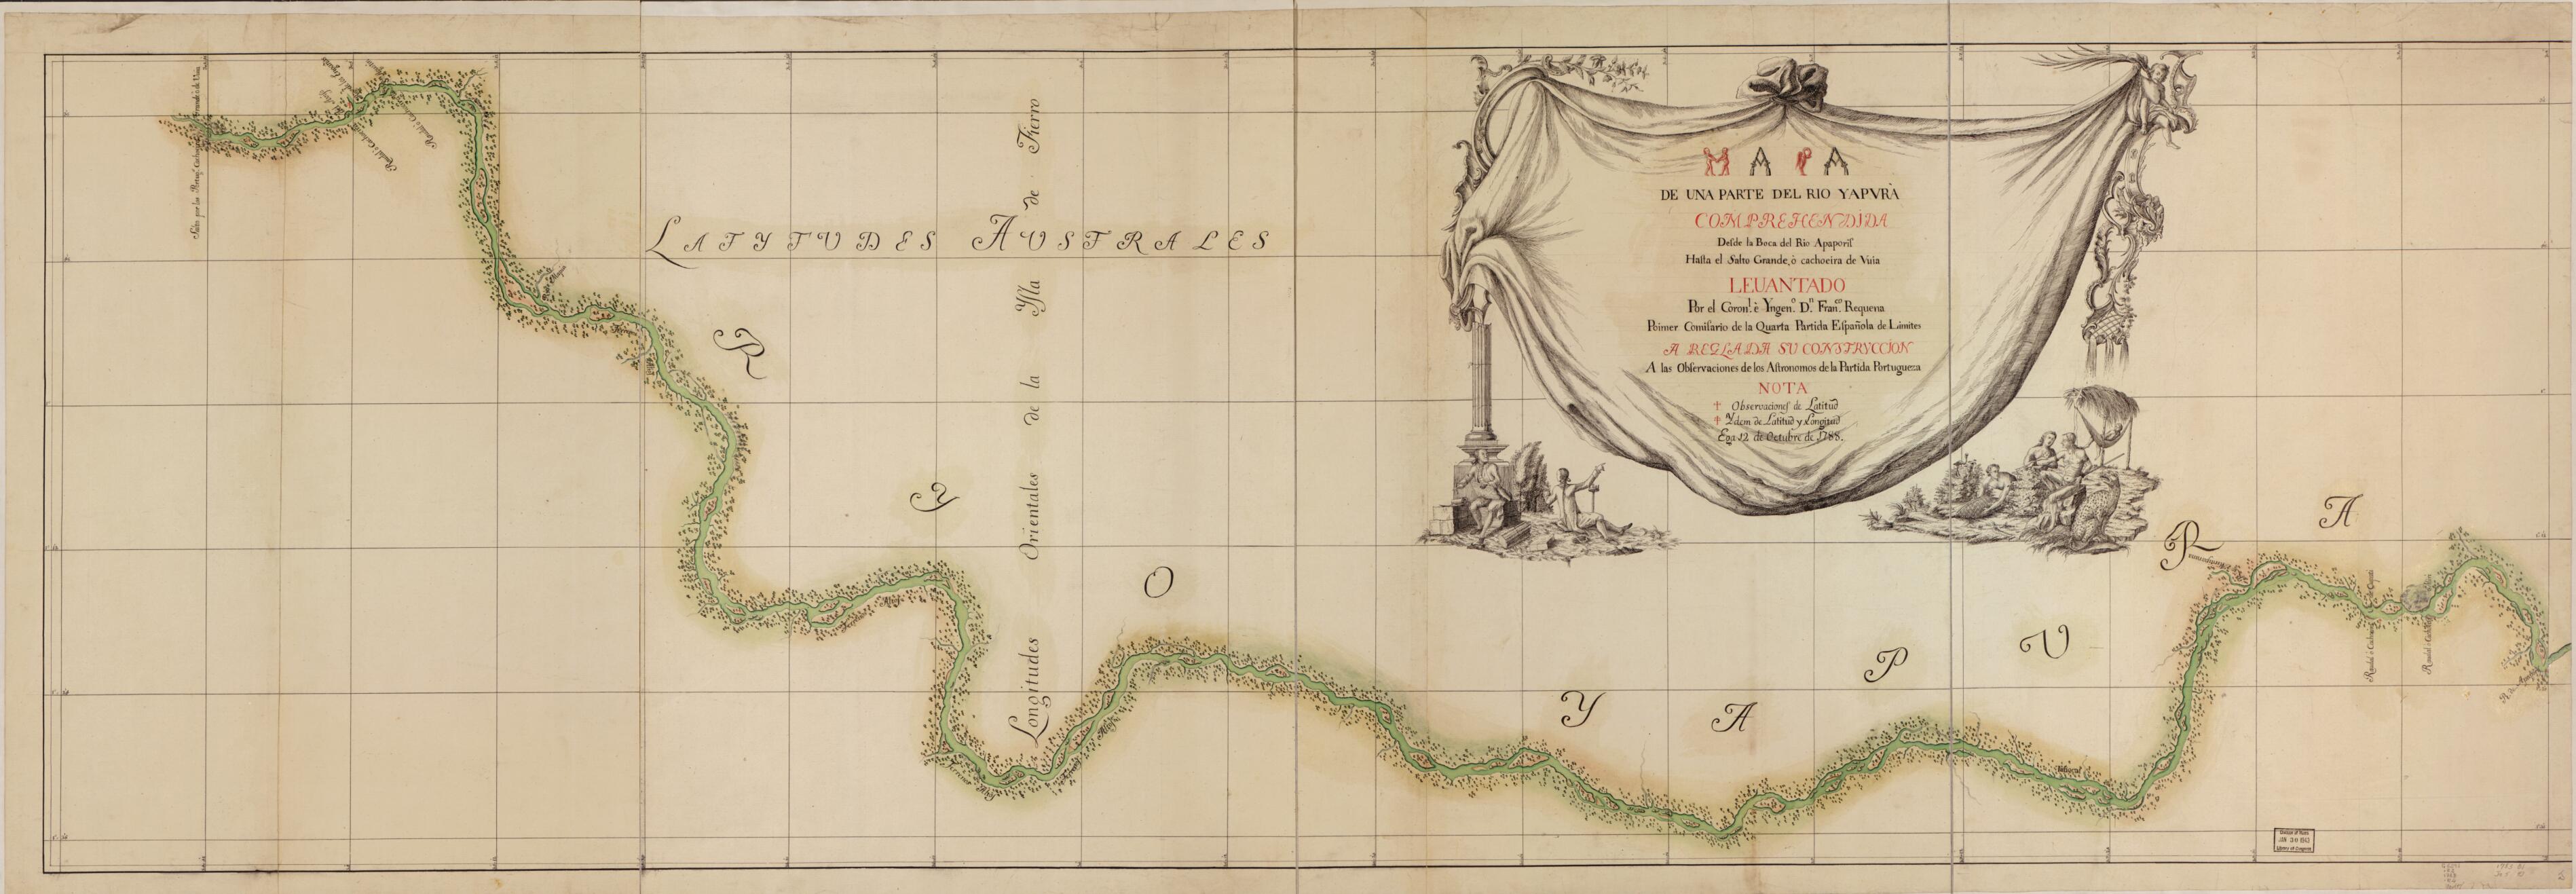 This old map of Mapa De Una Parte Del Rio Yapurá : Comprehendida Desde La Boca Del Rio Apaporis Hasta El Salto Grande O Cachoeira De Vuia from 1788 was created by Francisco Requena in 1788